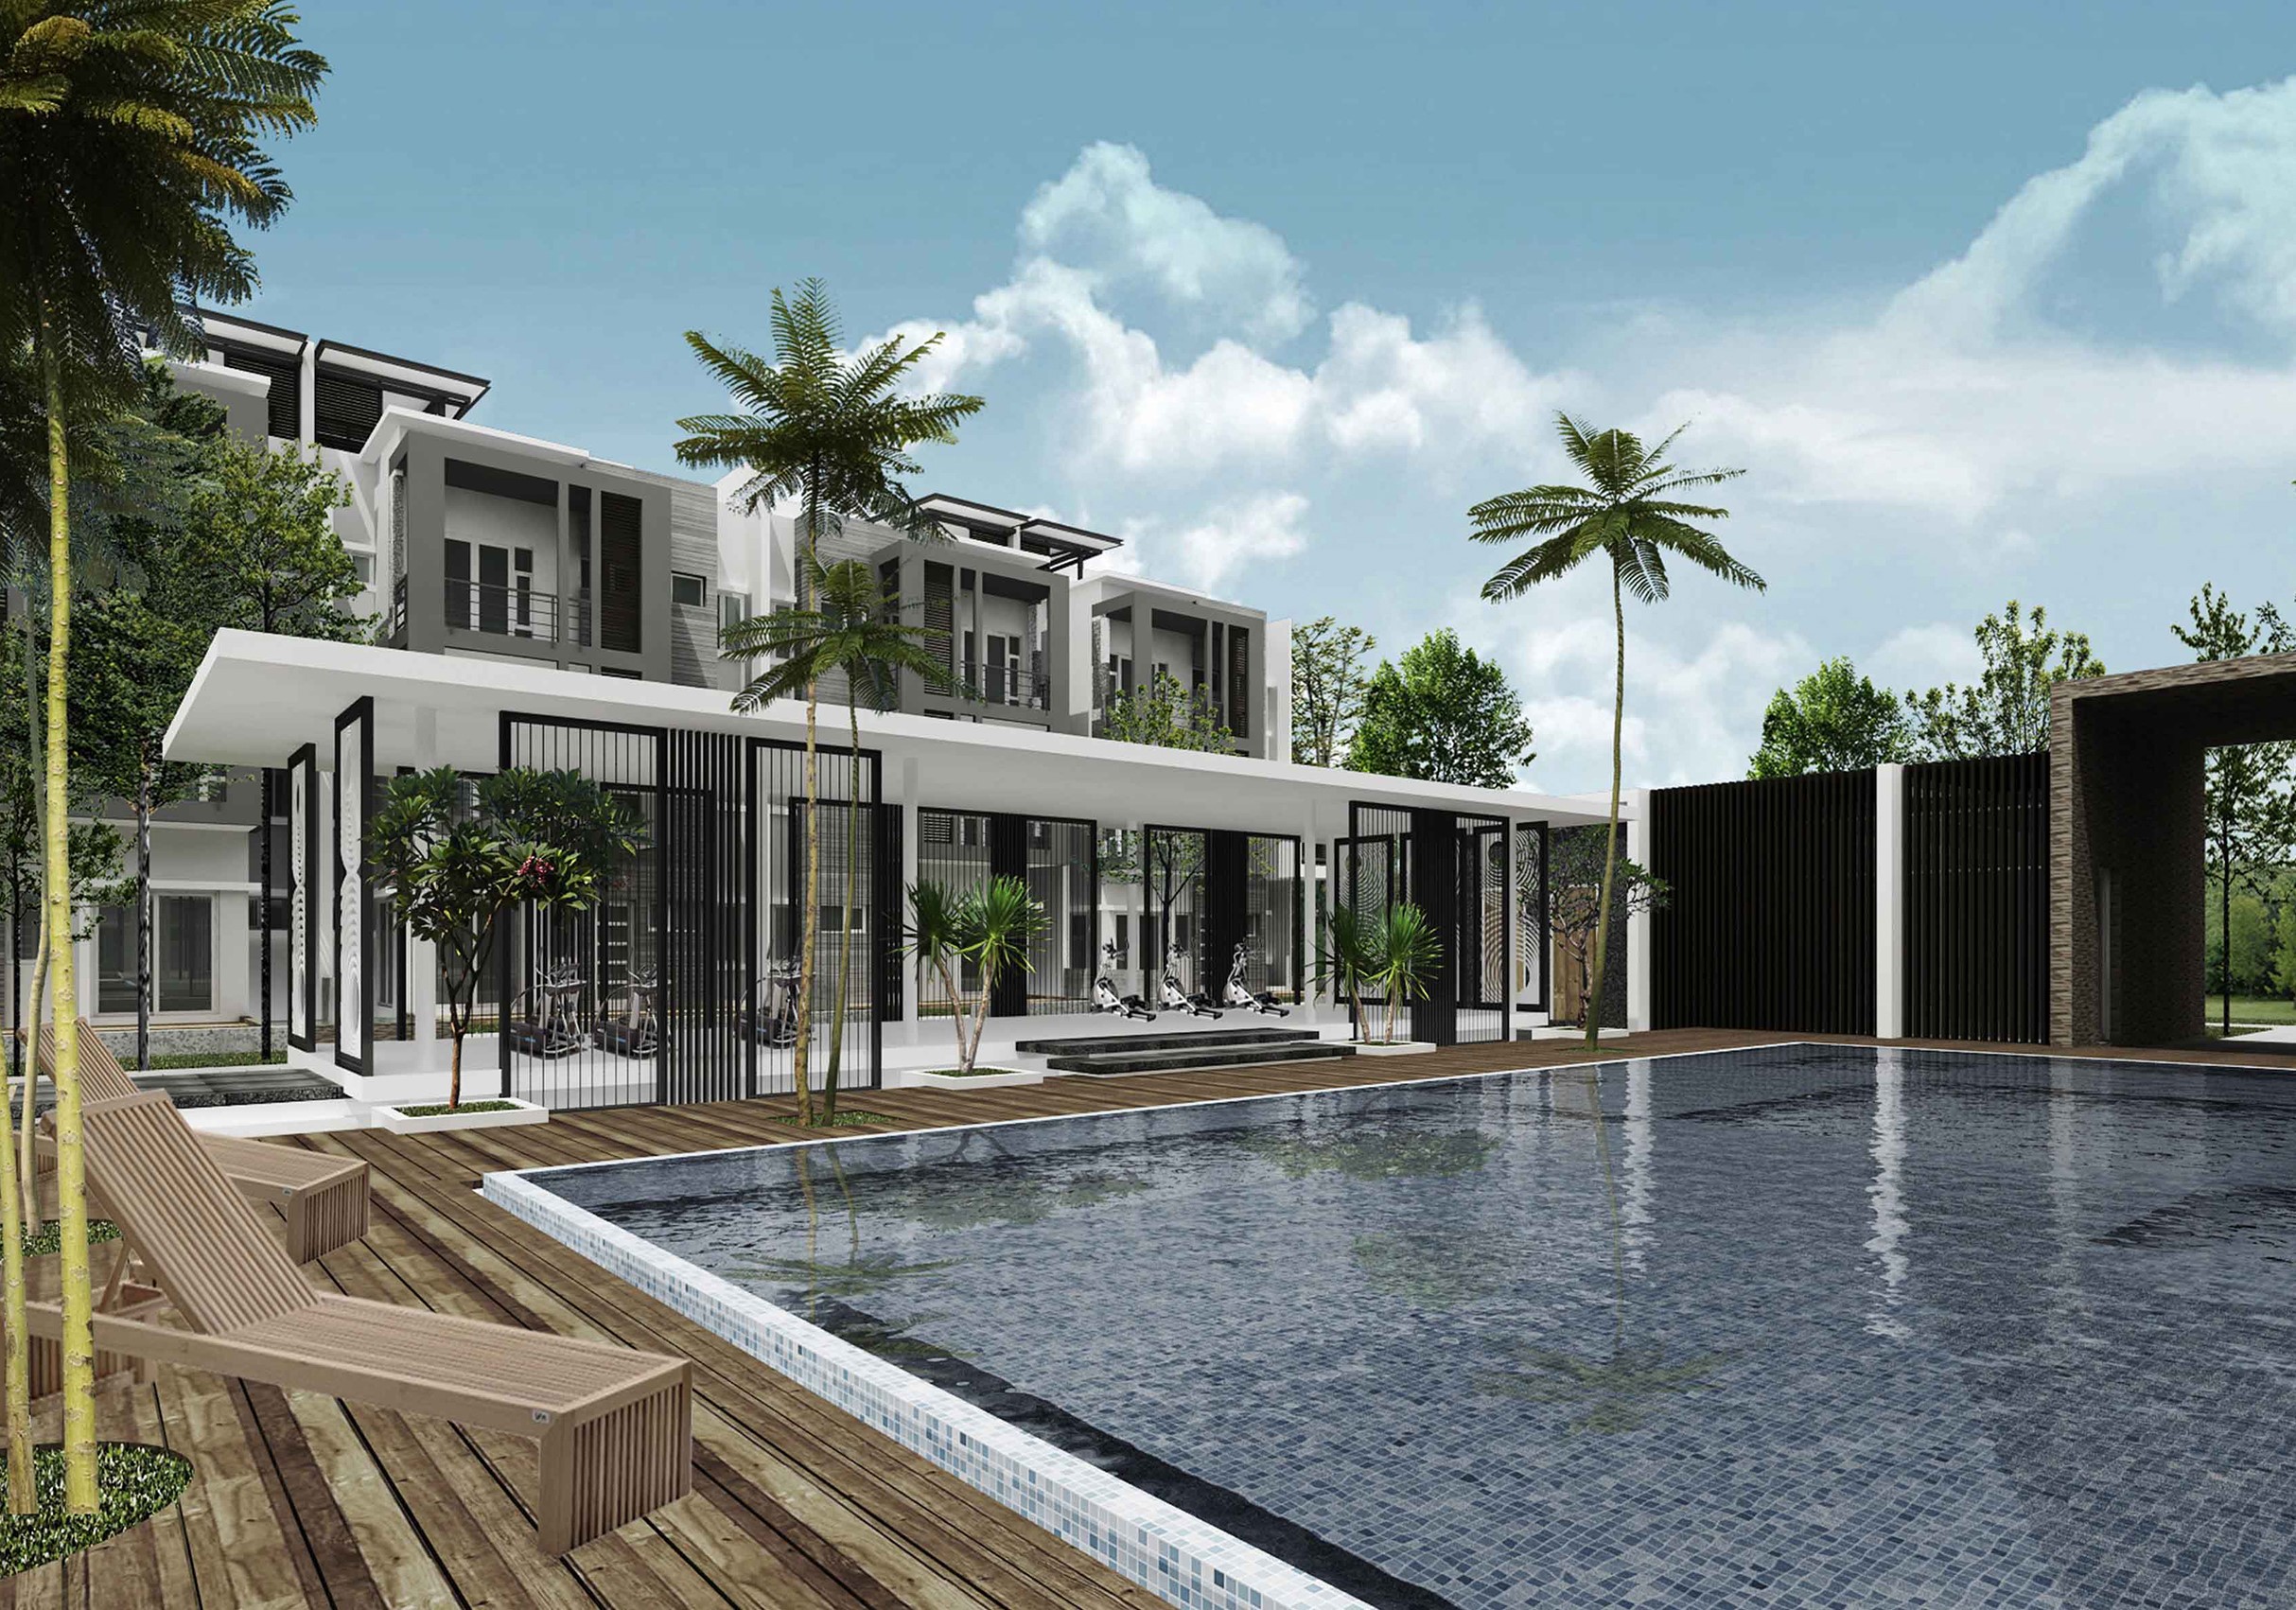 Property Development - Layun Enterprise Sdn. Bhd.